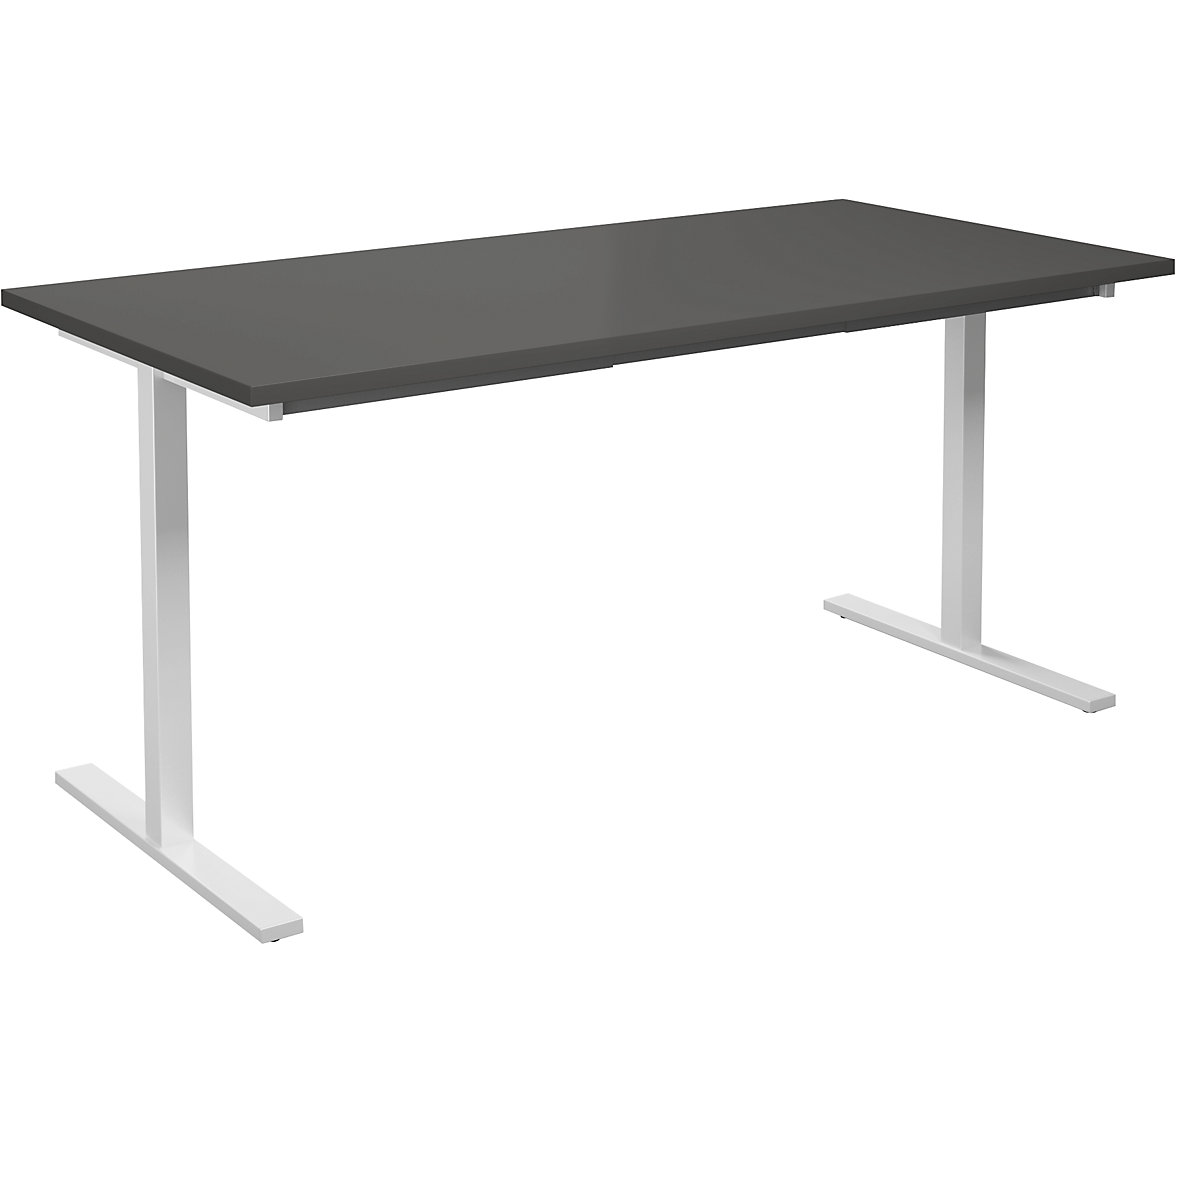 DUO-T multi-purpose desk, straight tabletop, WxD 1600 x 800 mm, dark grey, white-11